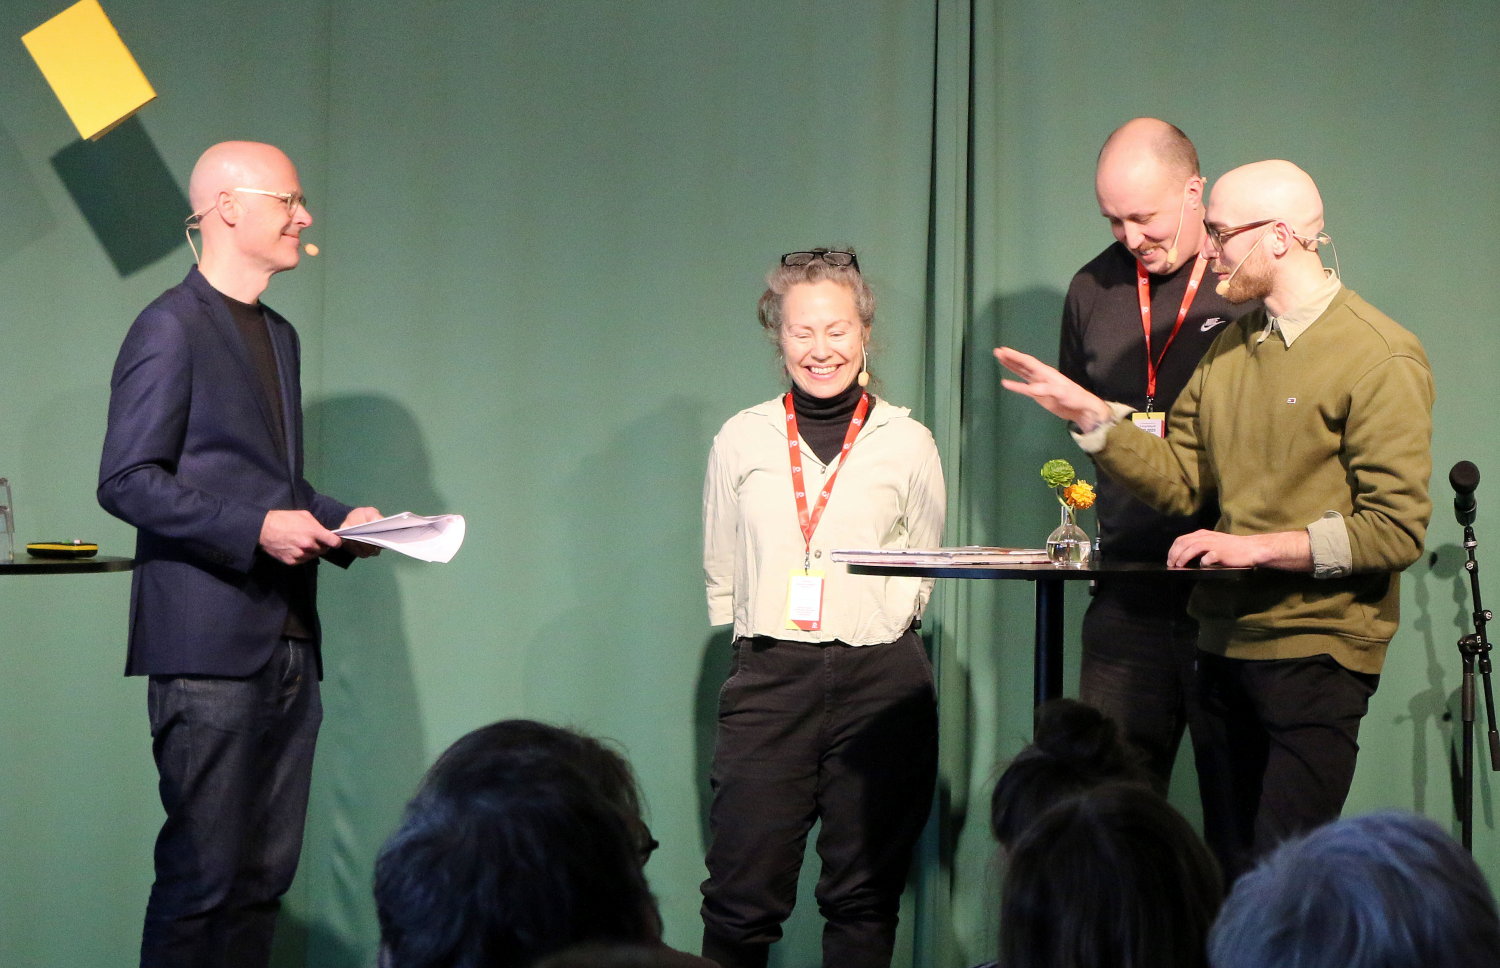 Anders Mildner, Ulrika Ahlberg, Jens Zingmark och Ivar Fersters på en scen.